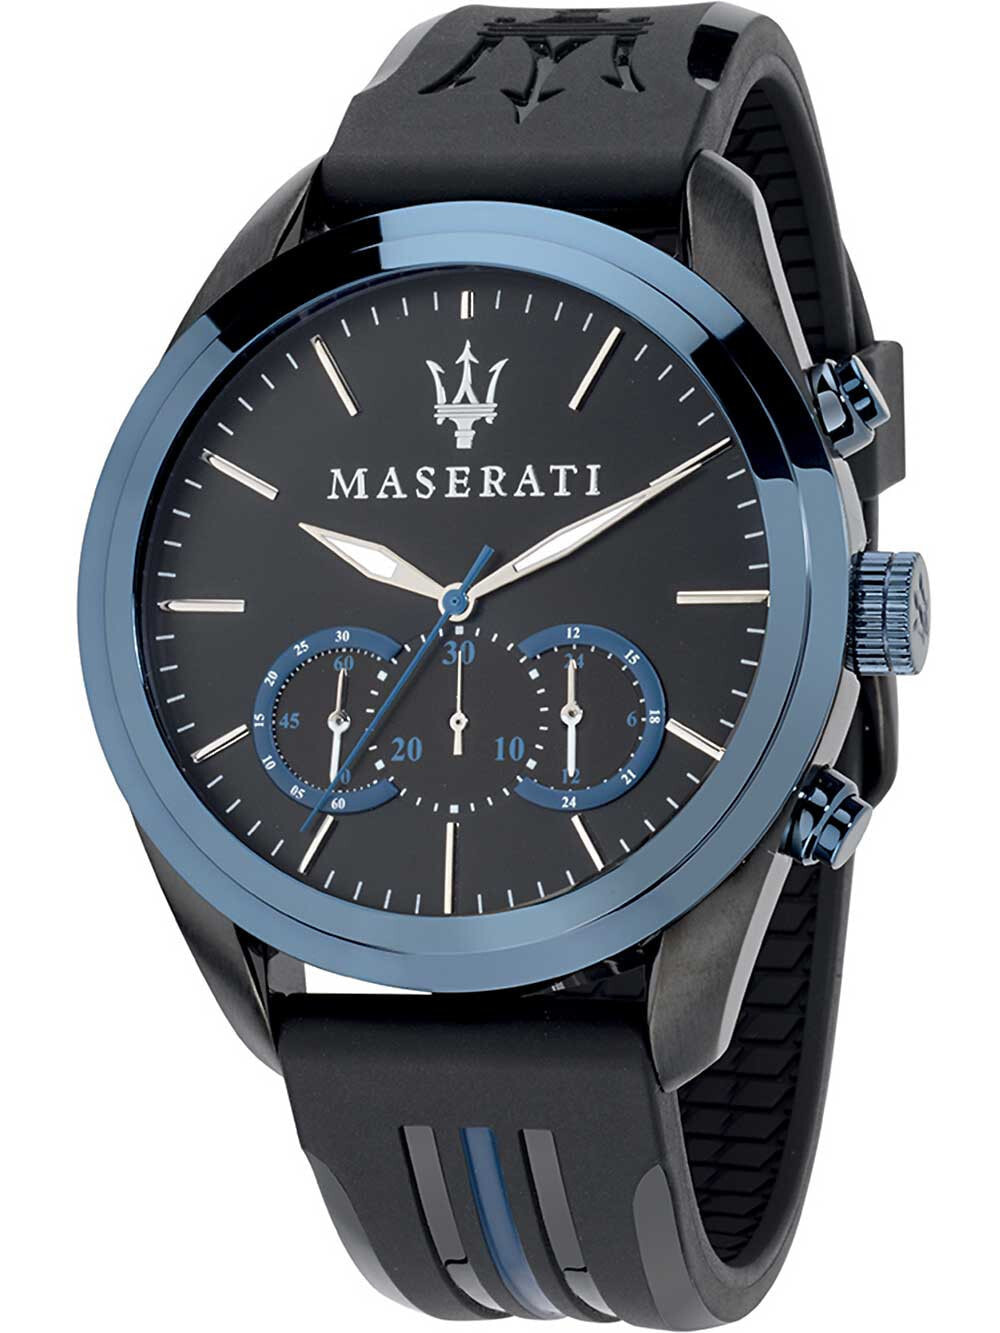 Мужские наручные часы с черным силиконовым ремешком Maserati R8871612006 Finish line chronograph 45mm 10ATM